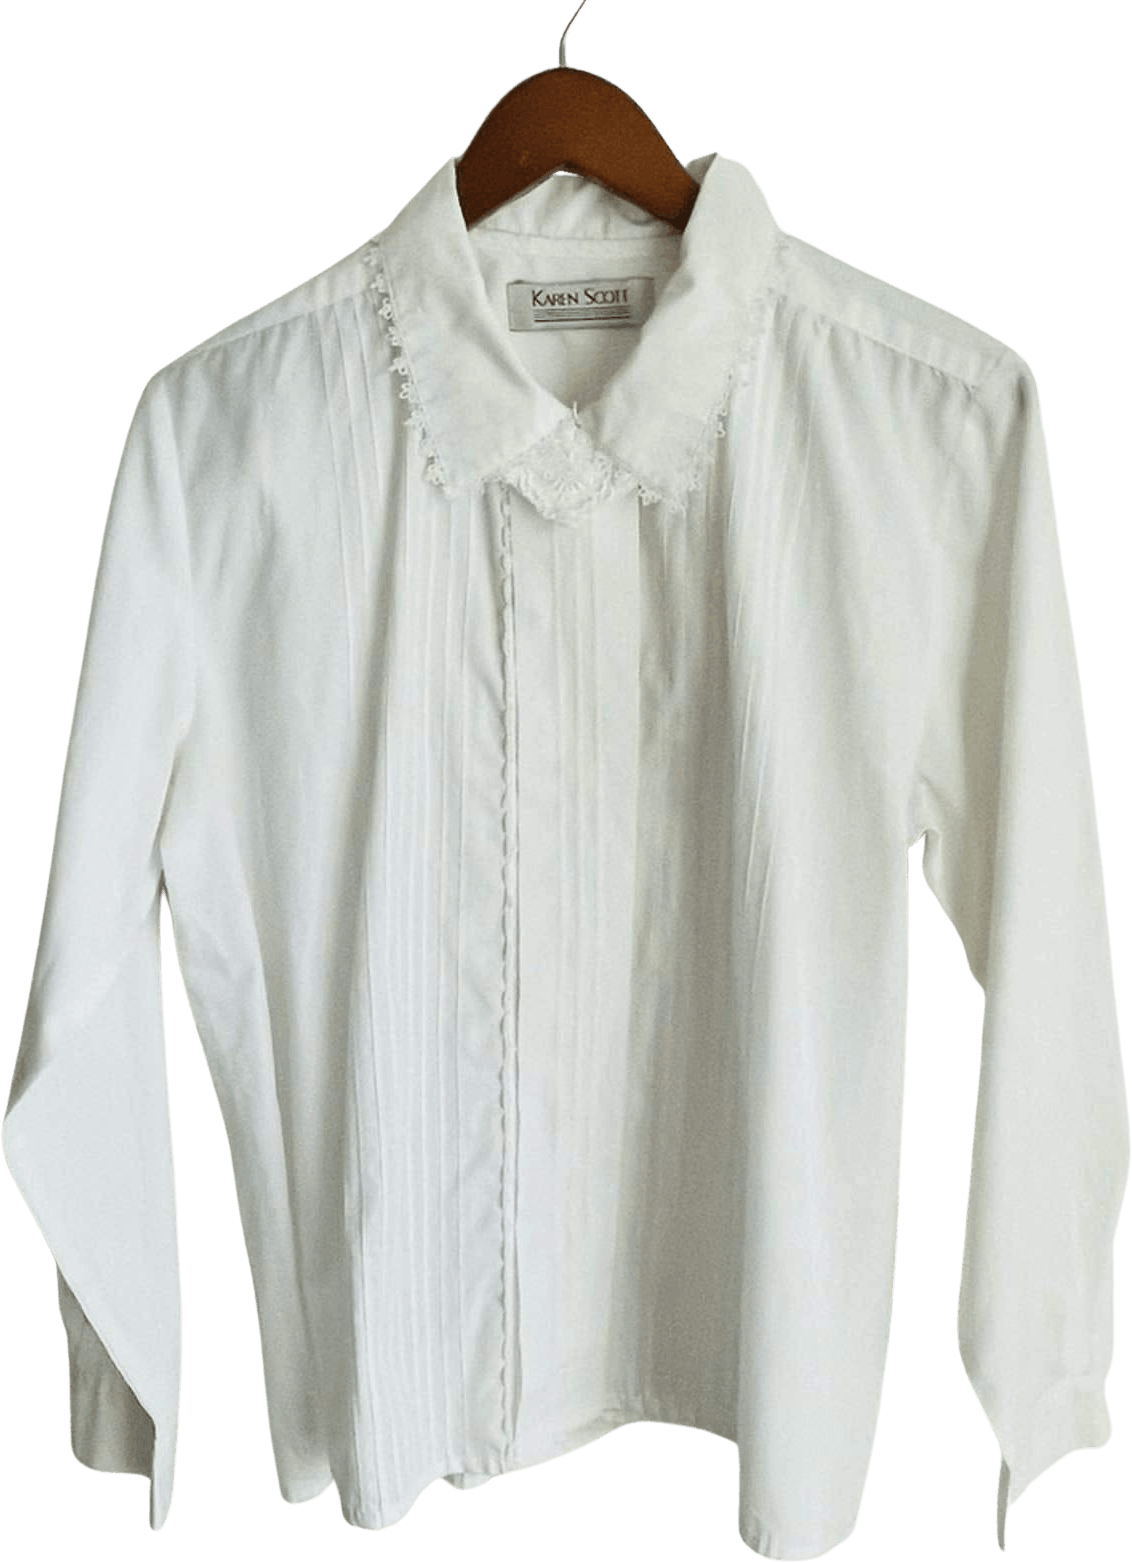 Vintage 90’s White Button Up Lace Collar Blouse by Karen Scott | Shop ...